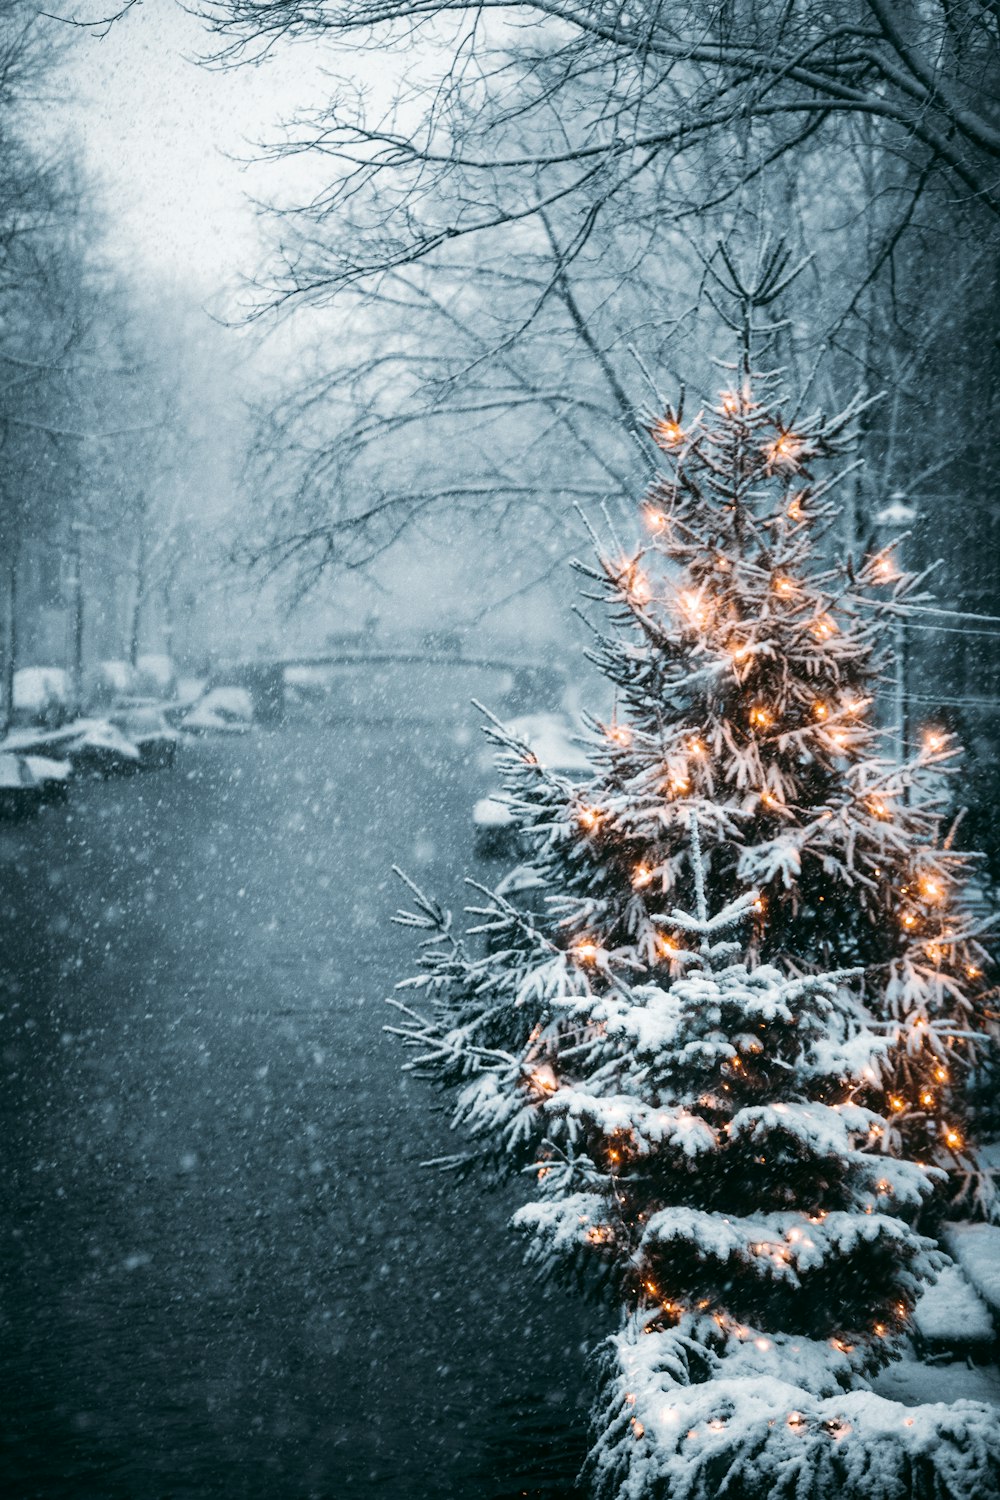 Hãy cùng tận hưởng không khí Noel với hình ảnh cây thông noel bị phủ hoàn toàn bởi tuyết trắng. Với ảnh miễn phí này, bạn sẽ cảm thấy được một mùa lễ hội ấm áp, ý nghĩa. Qua ảnh, chúng ta có thể đón một mùa Giáng sinh hoàn hảo chỉ trong tích tắc!